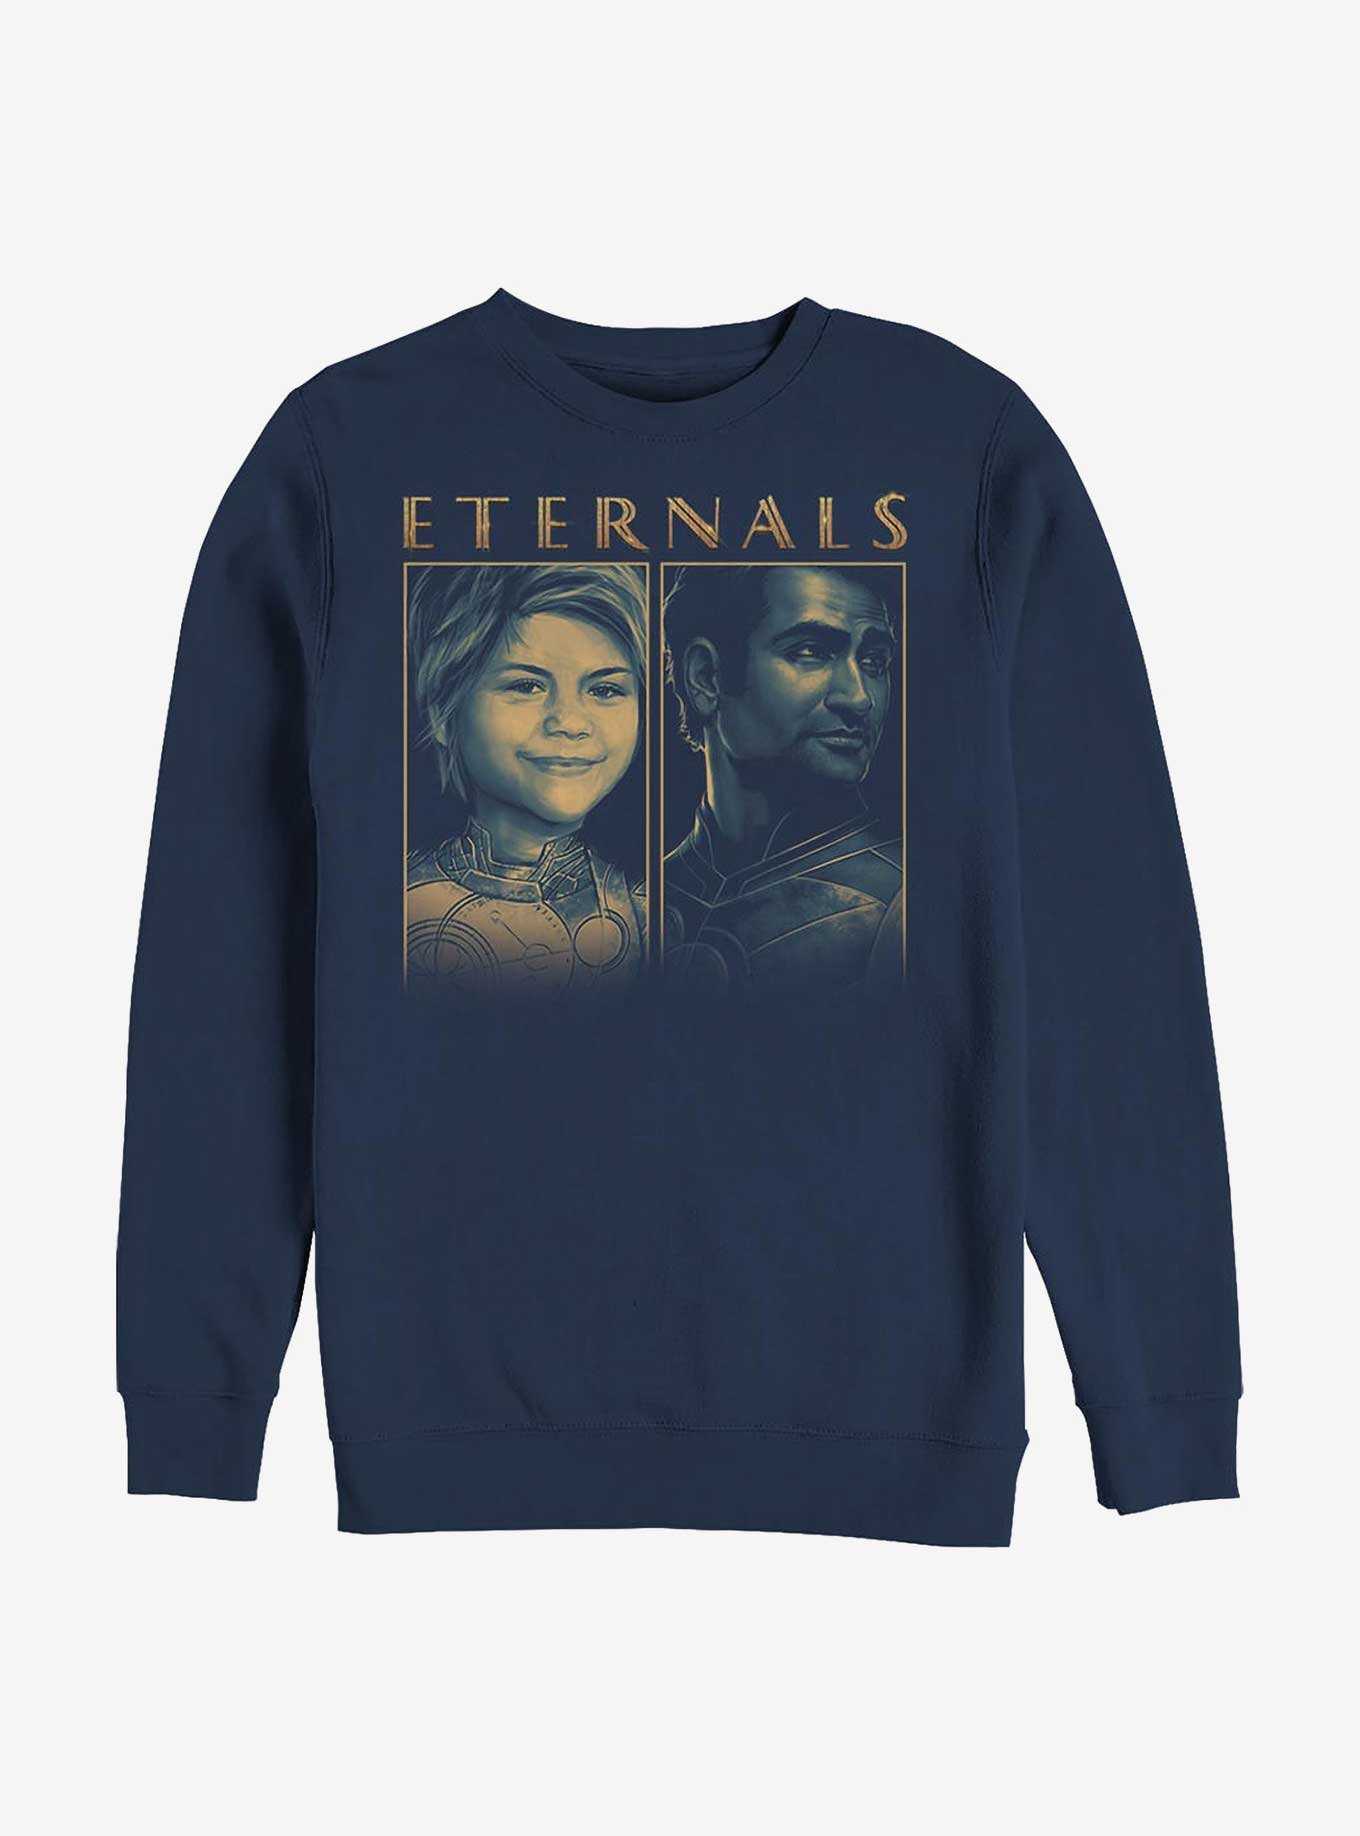 Marvel Eternals Eternal Group Crew Sweatshirt, , hi-res